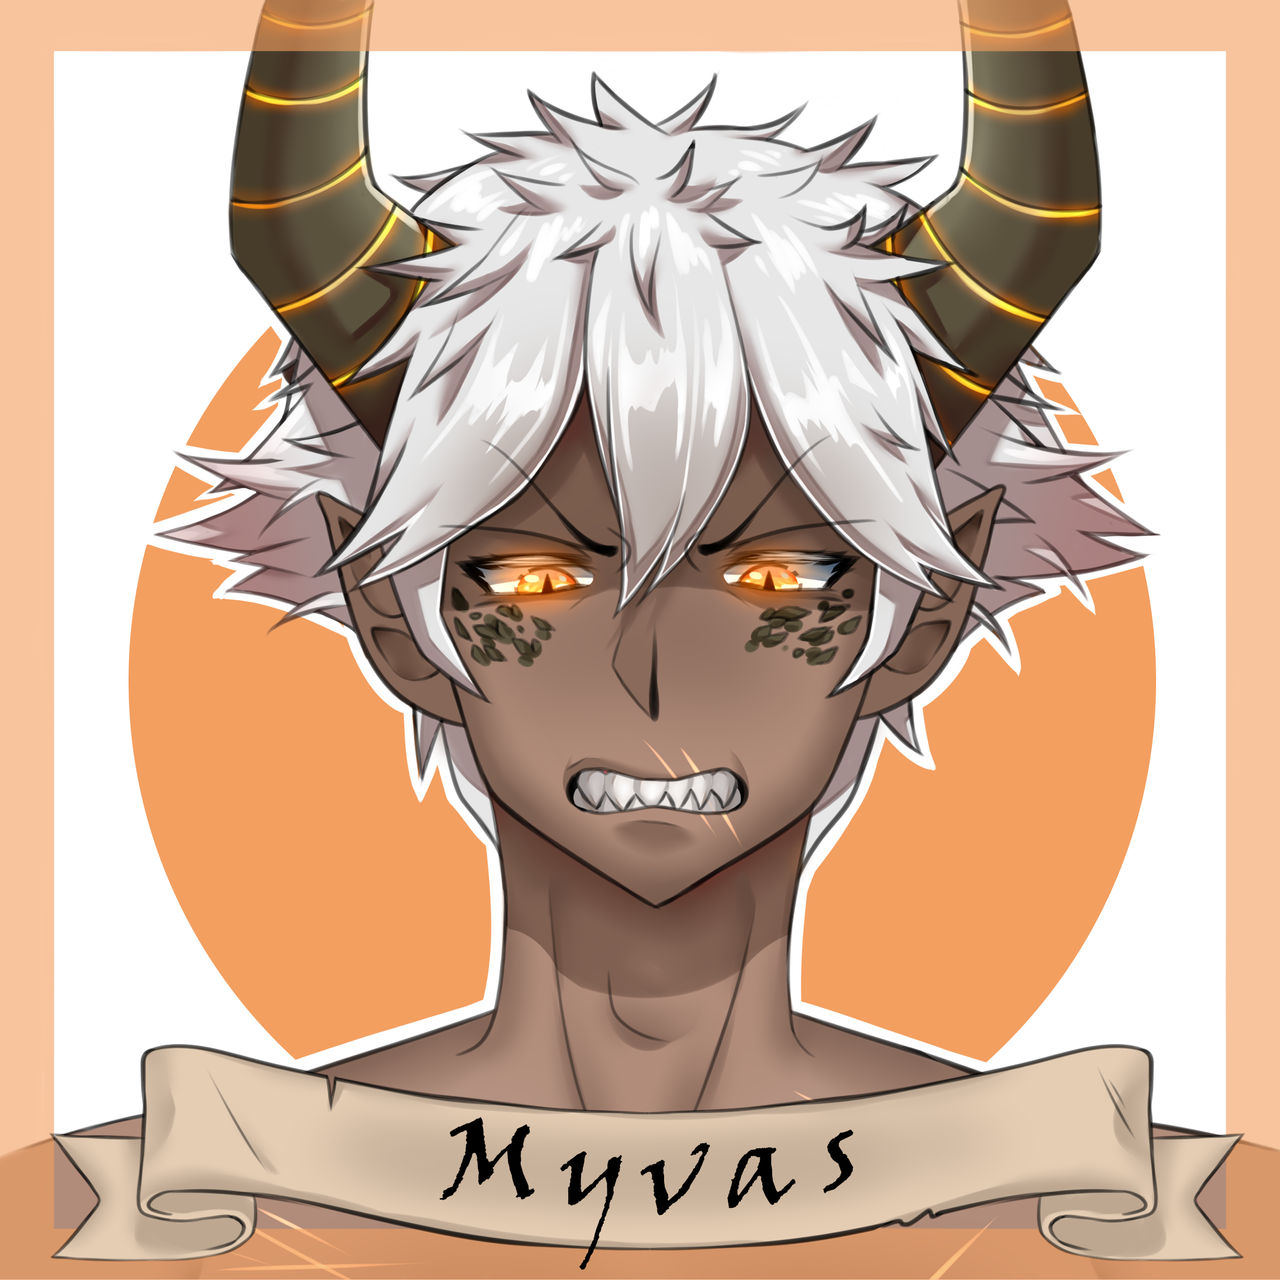 Myvas